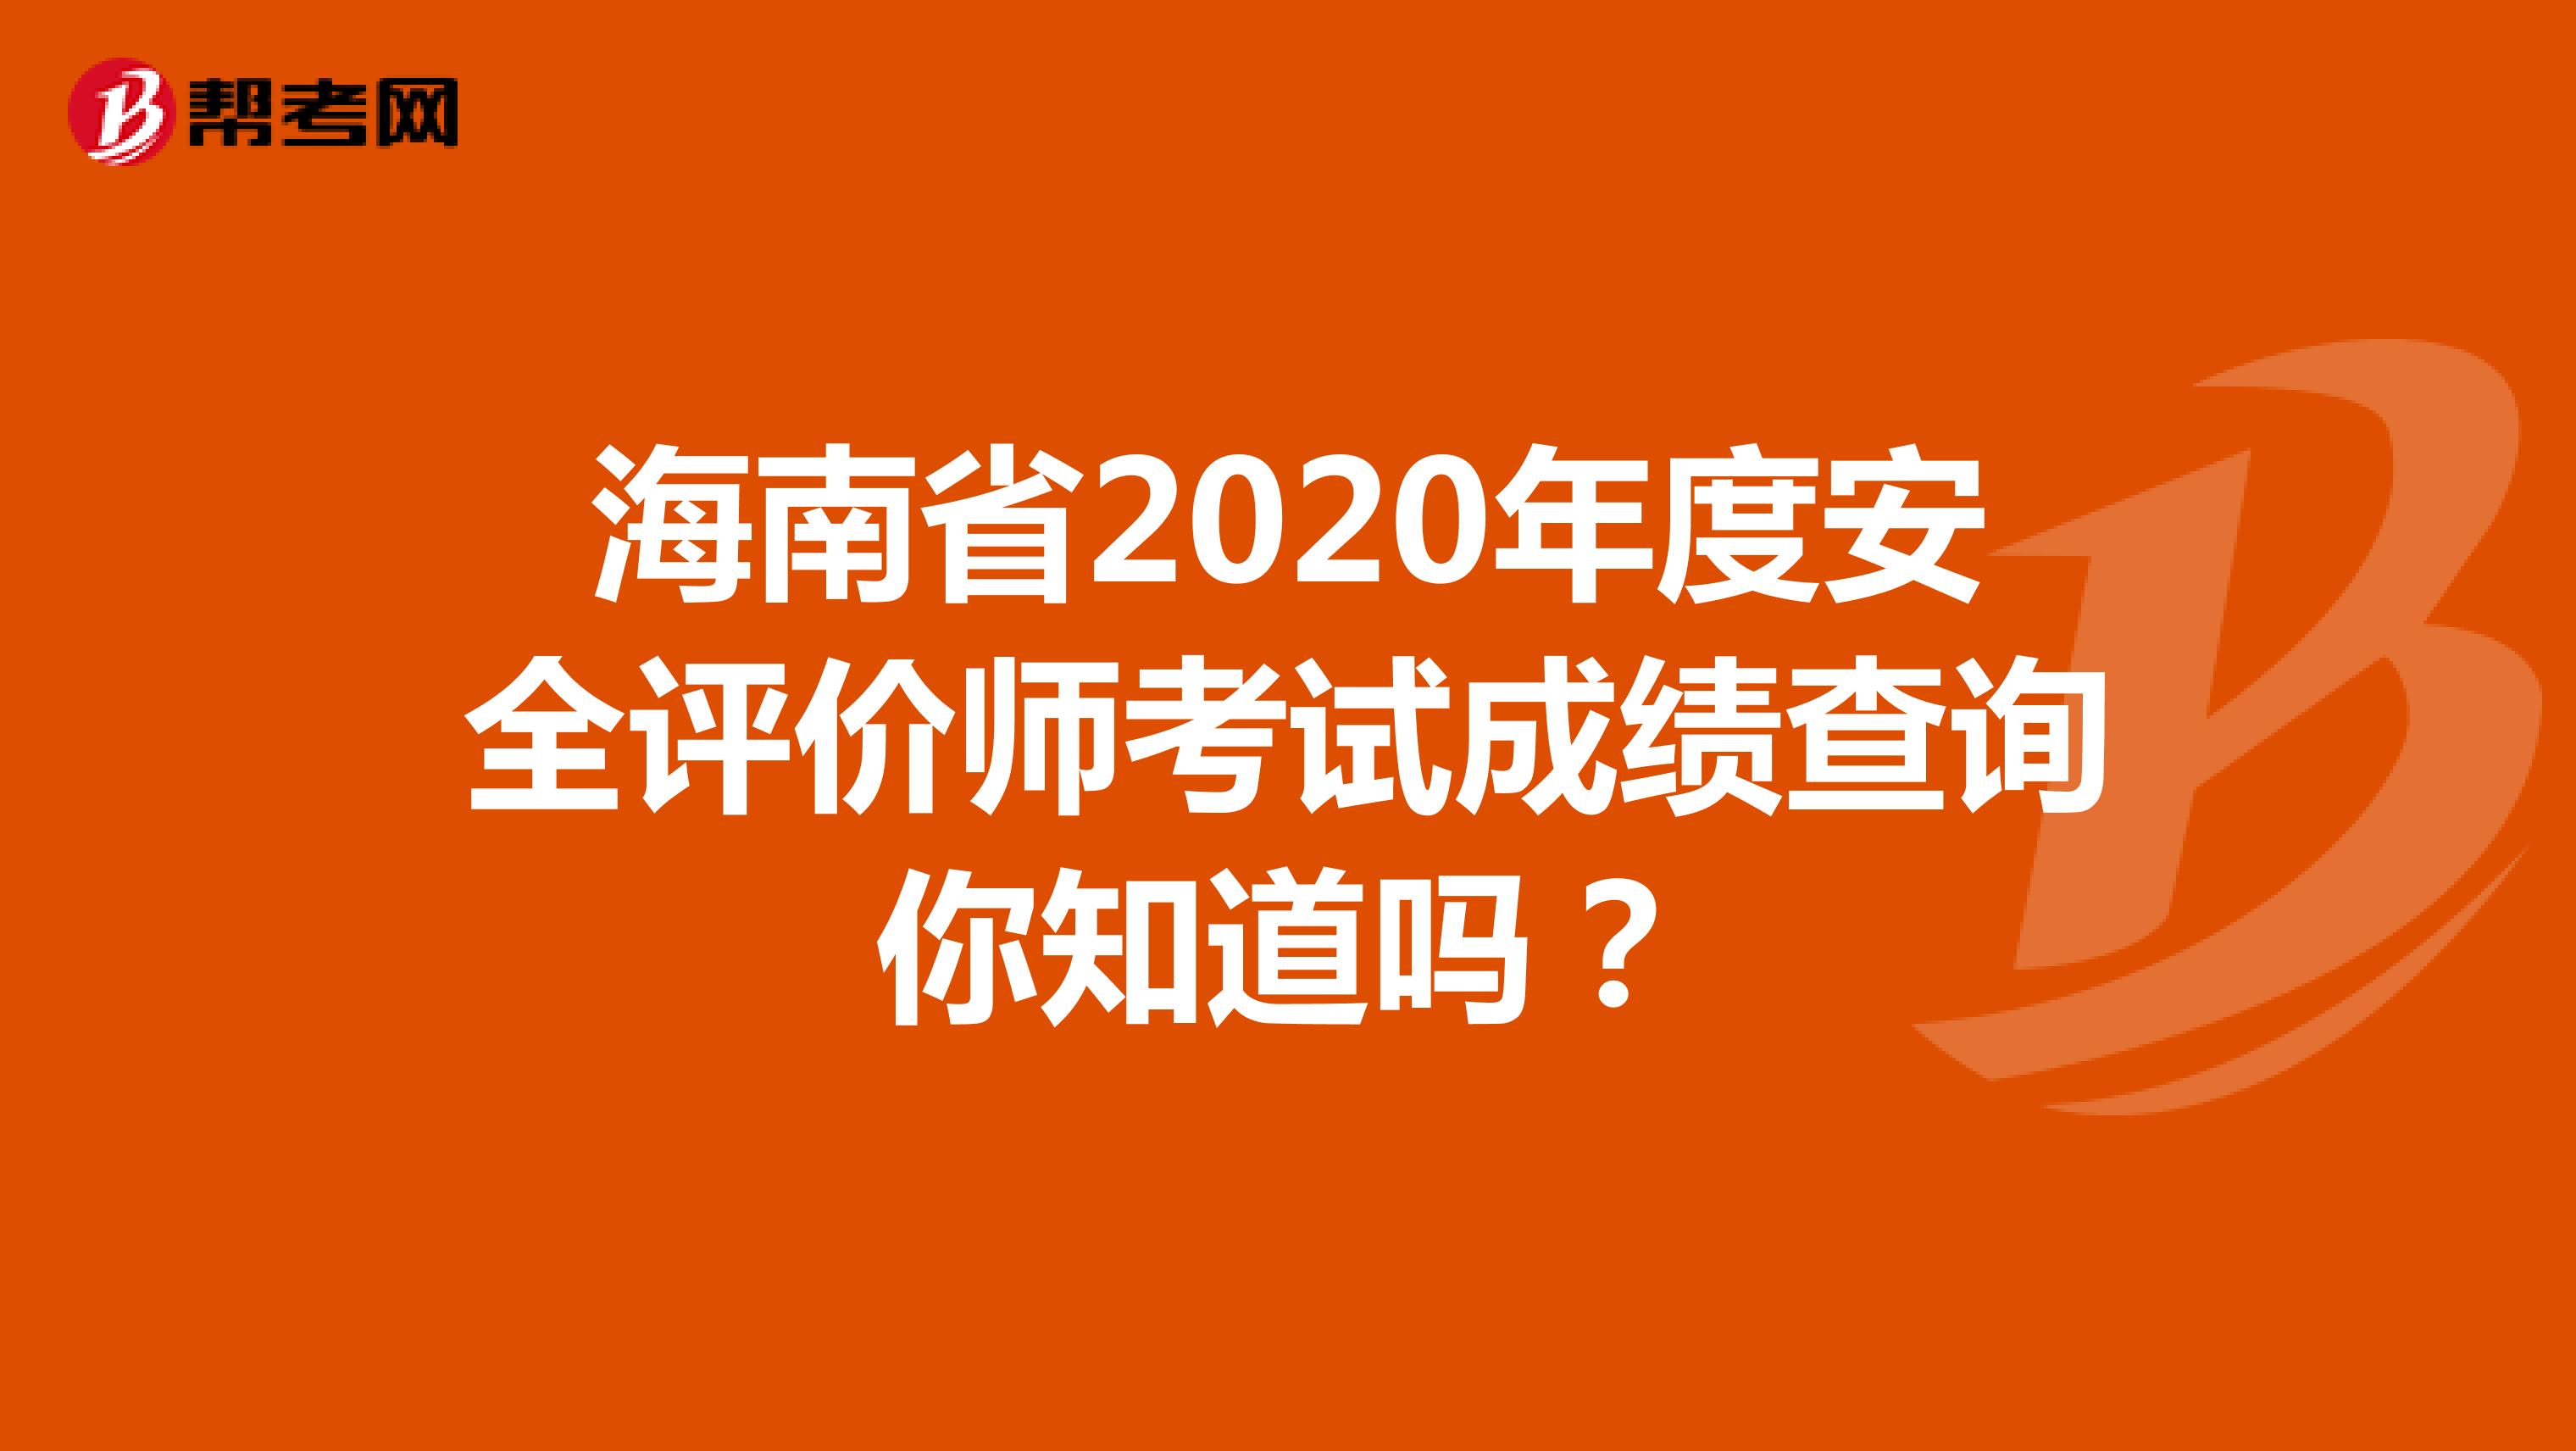 海南省2020年度安全评价师考试成绩查询你知道吗？